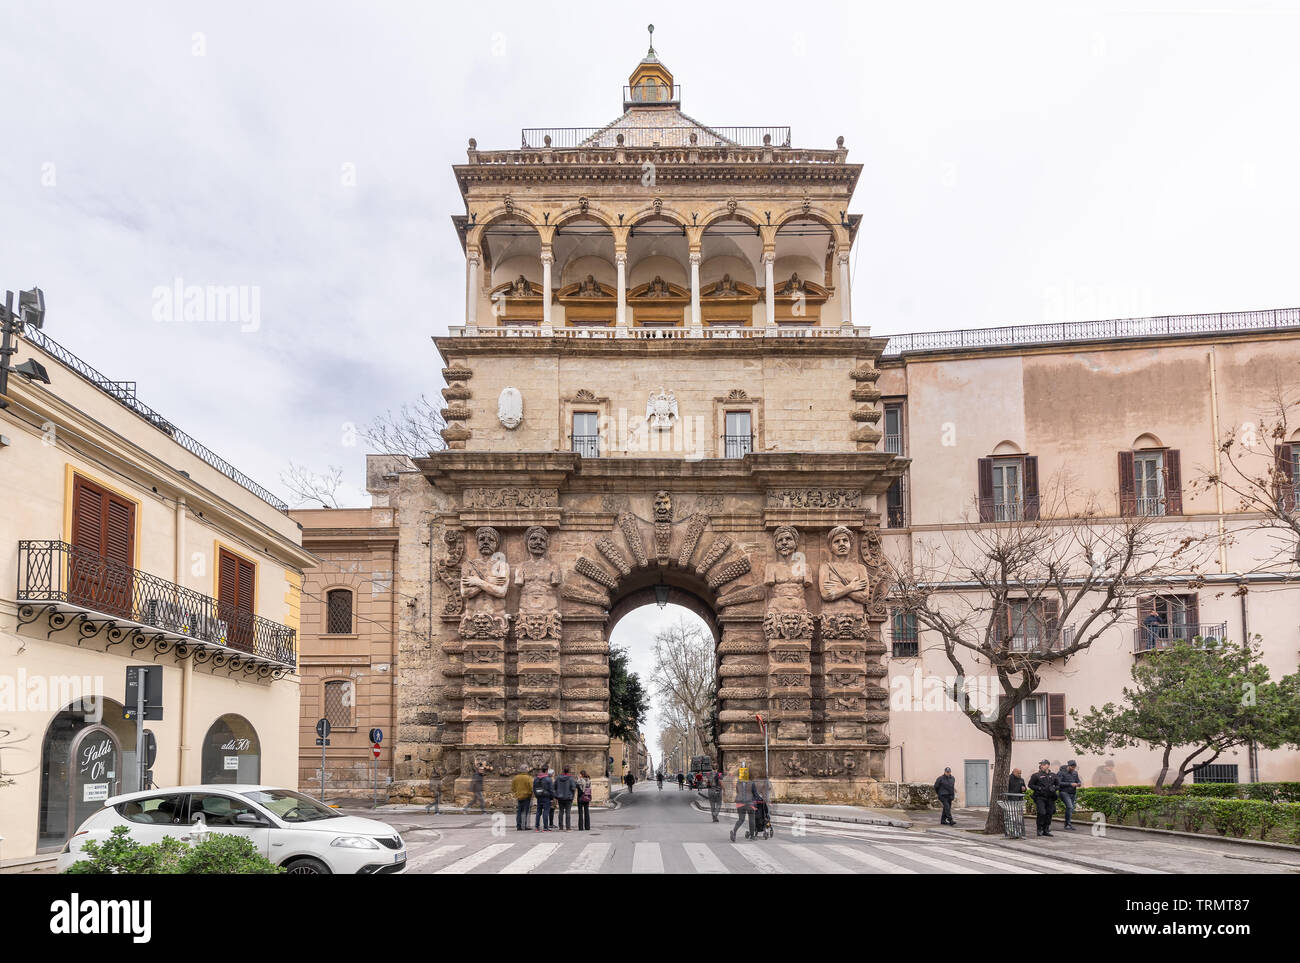 La stazione di Porta Nuova, una monumentale Porta della città di Palermo. Anteriore vista completa dell'architettura con persone di passaggio sulla strada. Foto Stock